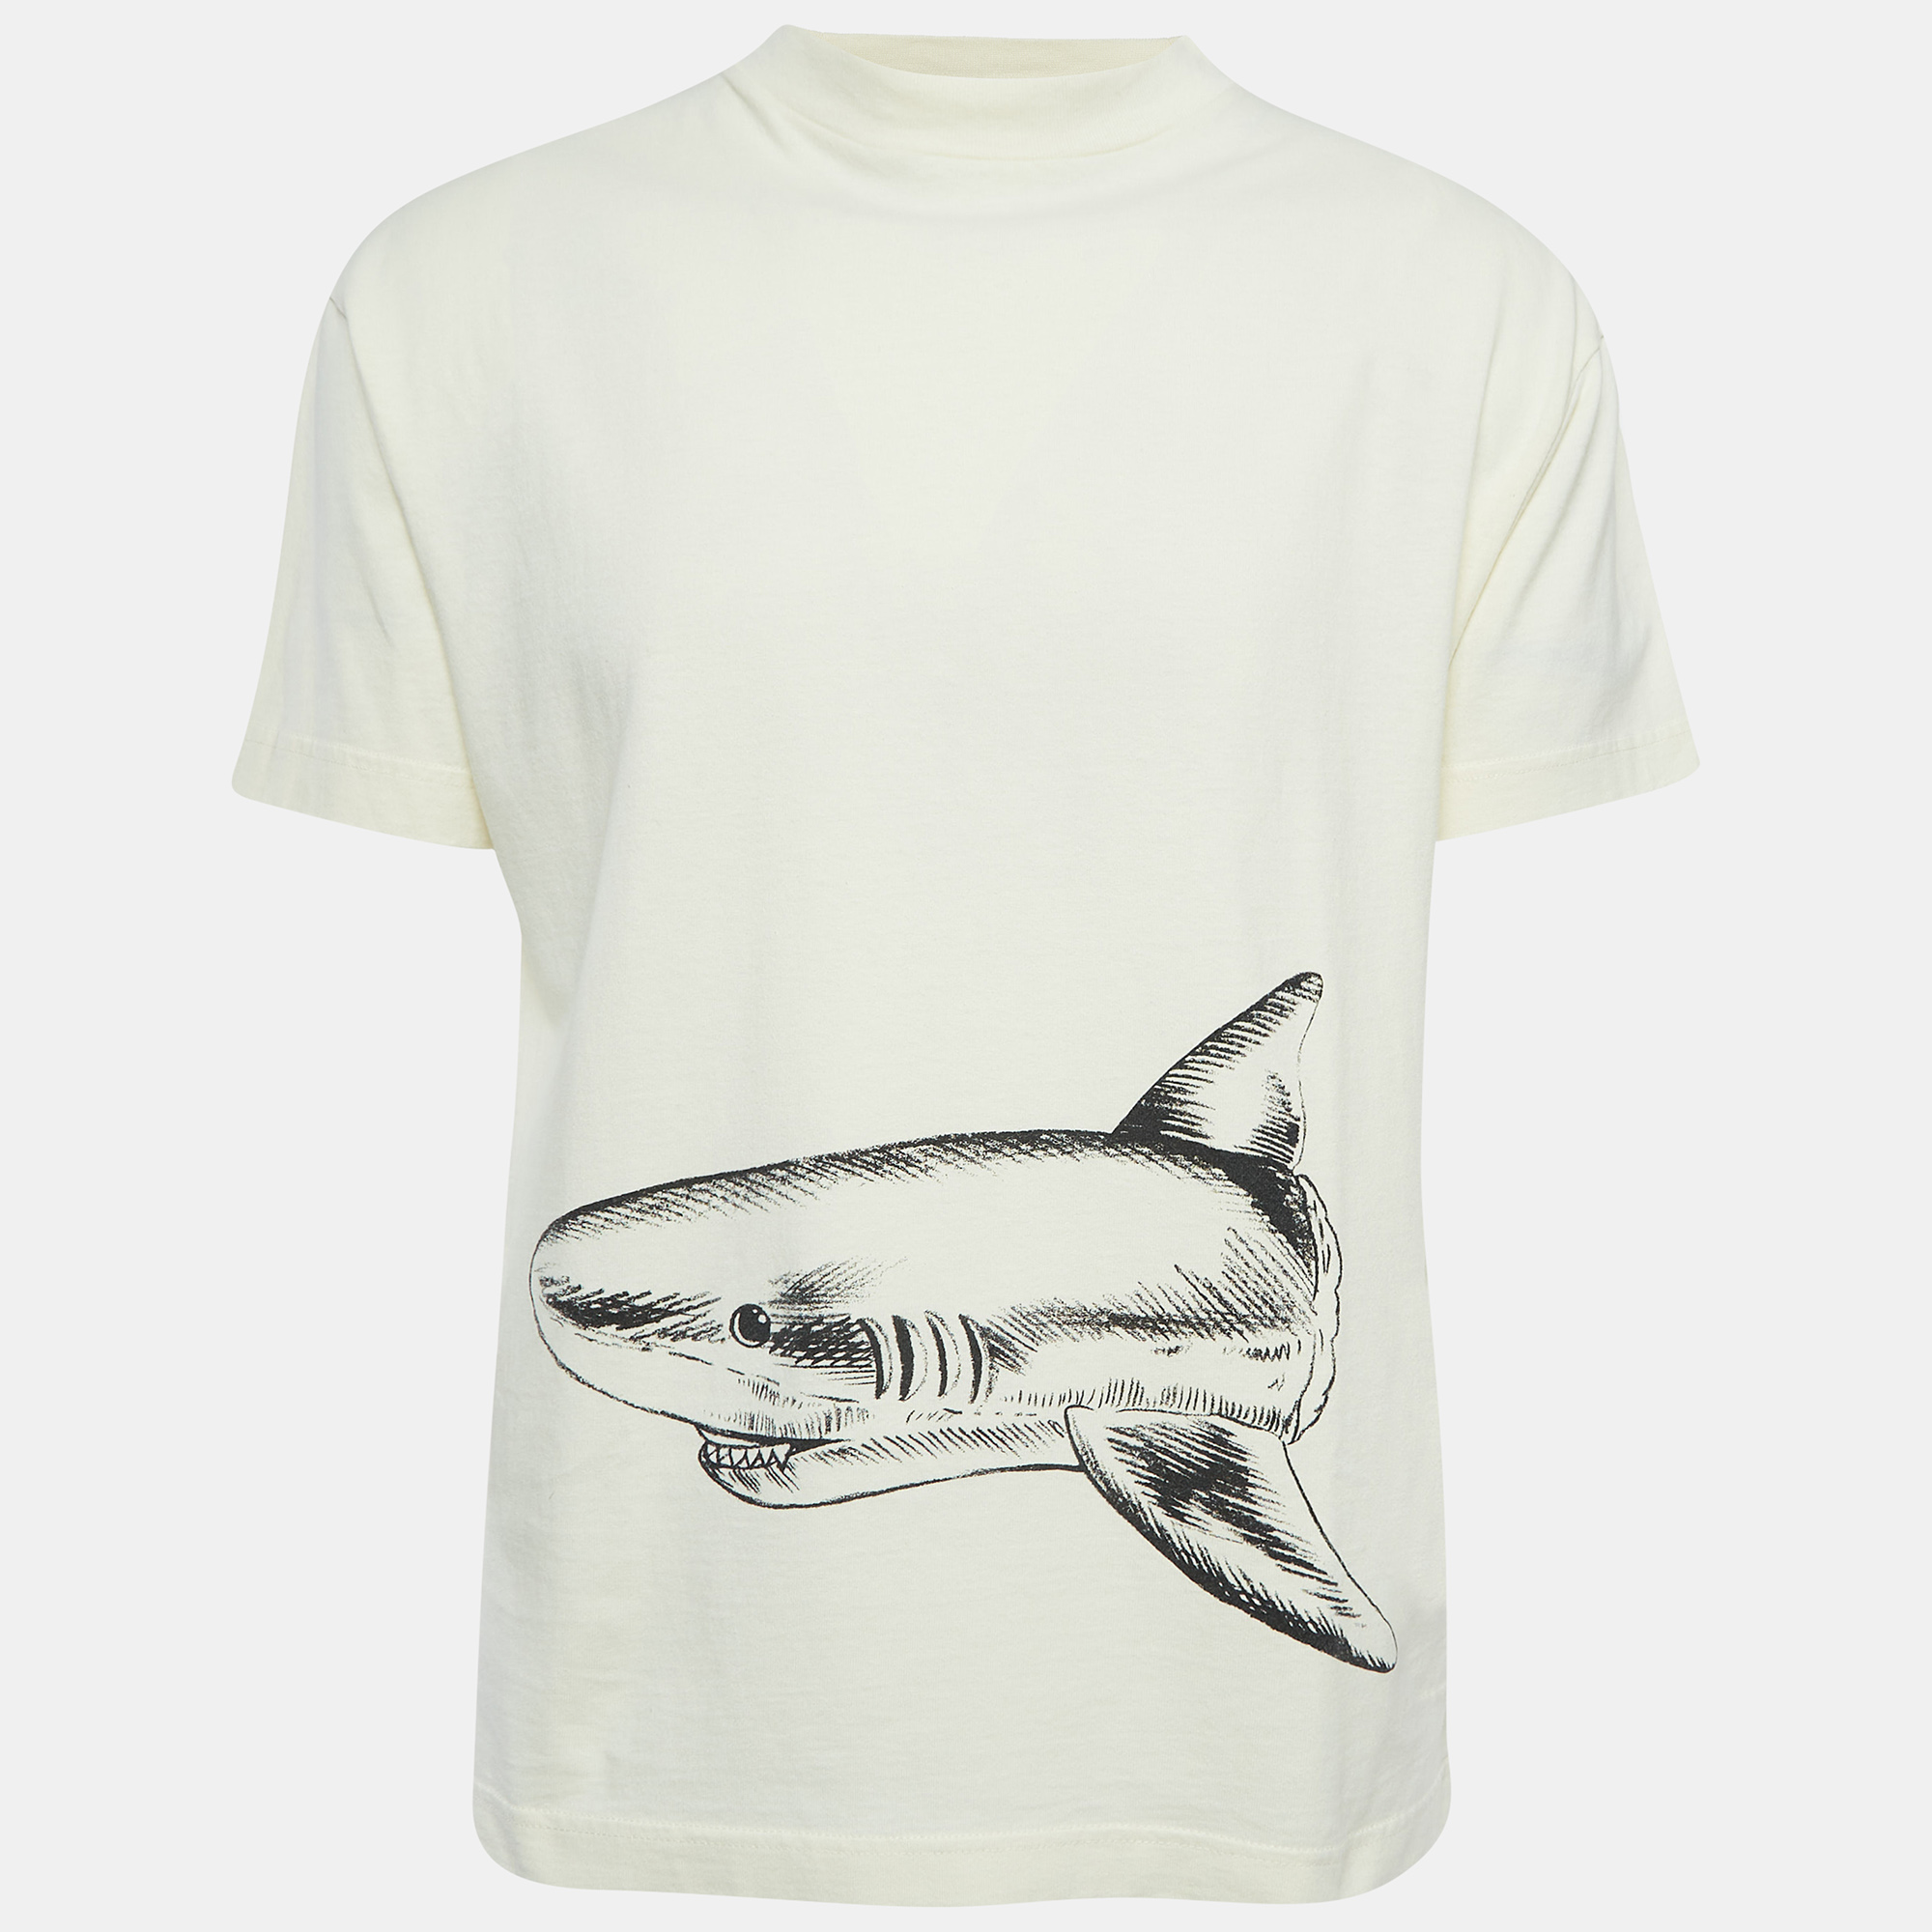 

Palm Angels Cream Broken Shark Print Cotton T-Shirt M